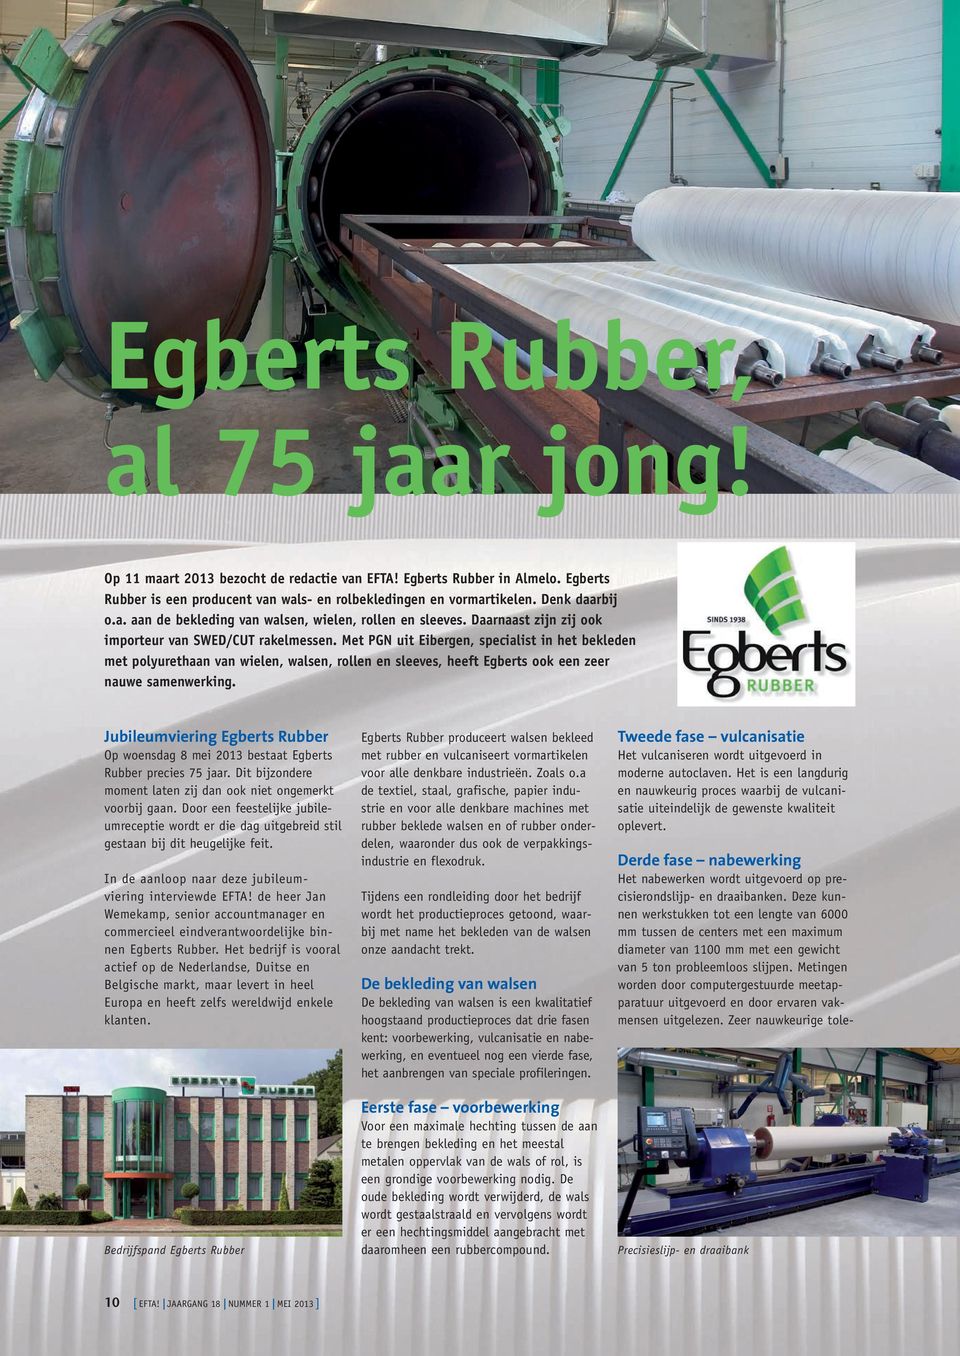 Met Pgn uit Eibergen, specialist in het bekleden met polyurethaan van wielen, walsen, rollen en sleeves, heeft Egberts ook een zeer nauwe samenwerking.